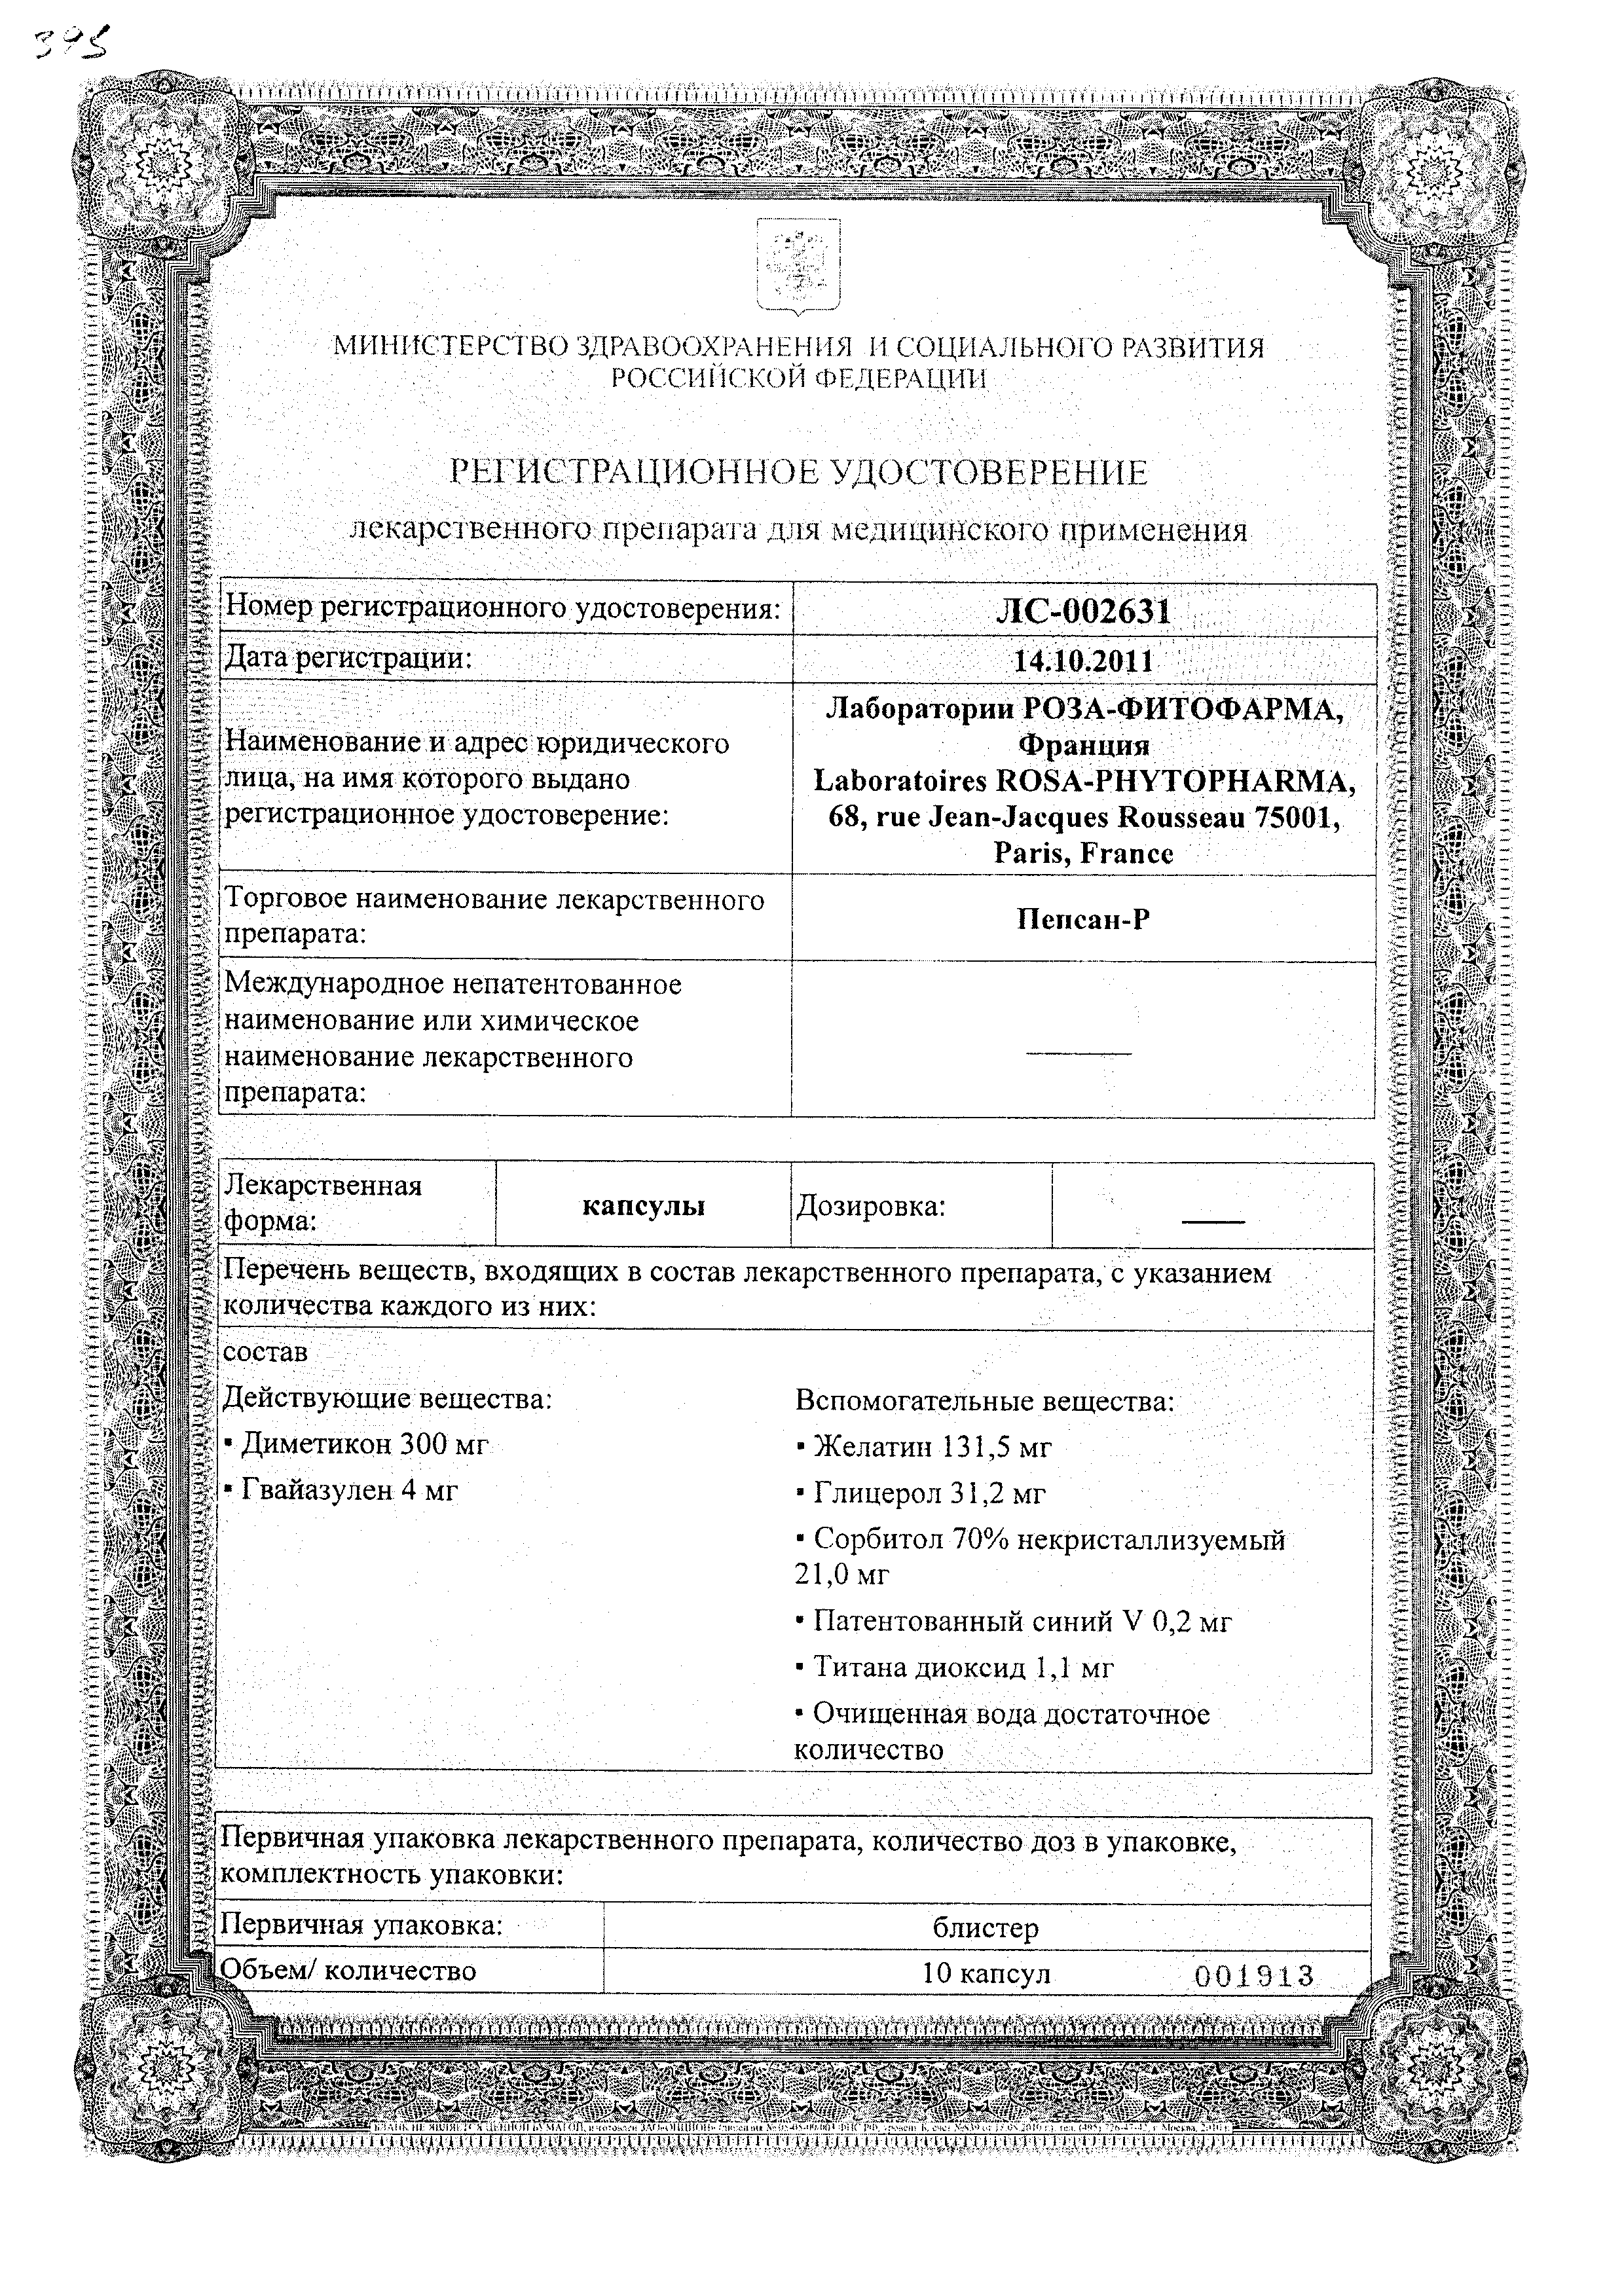 Пепсан-Р сертификат